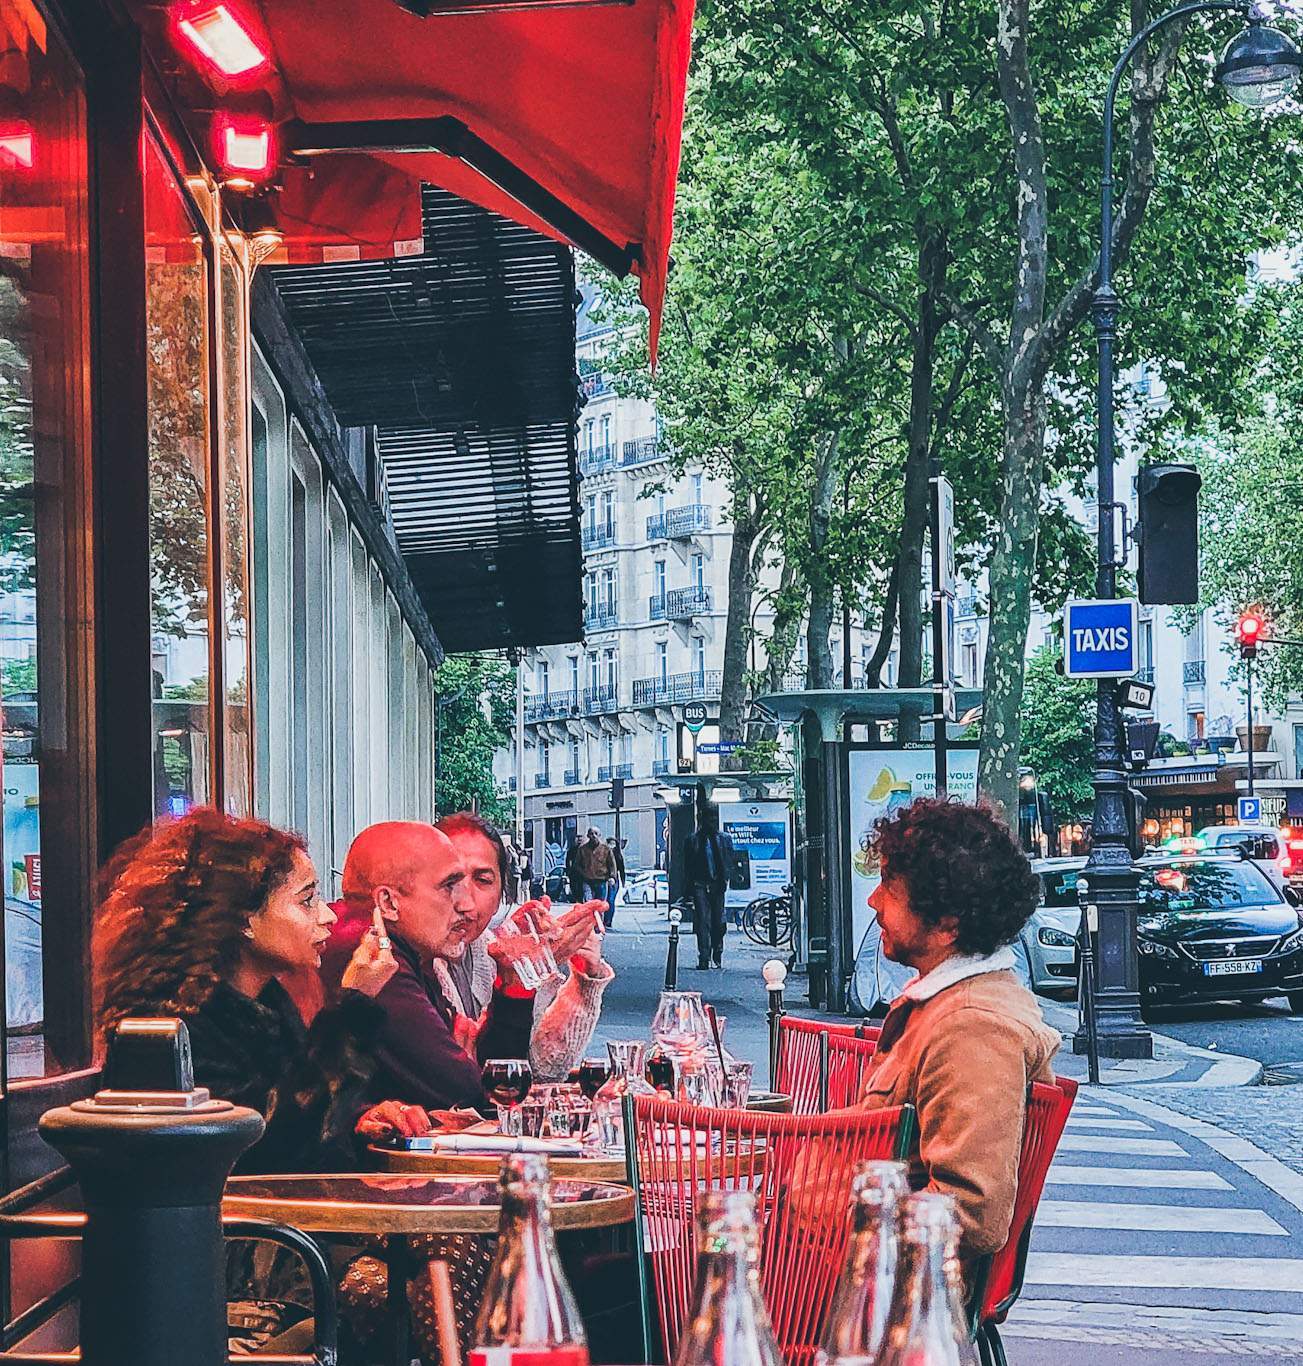 Paris cafe_edited